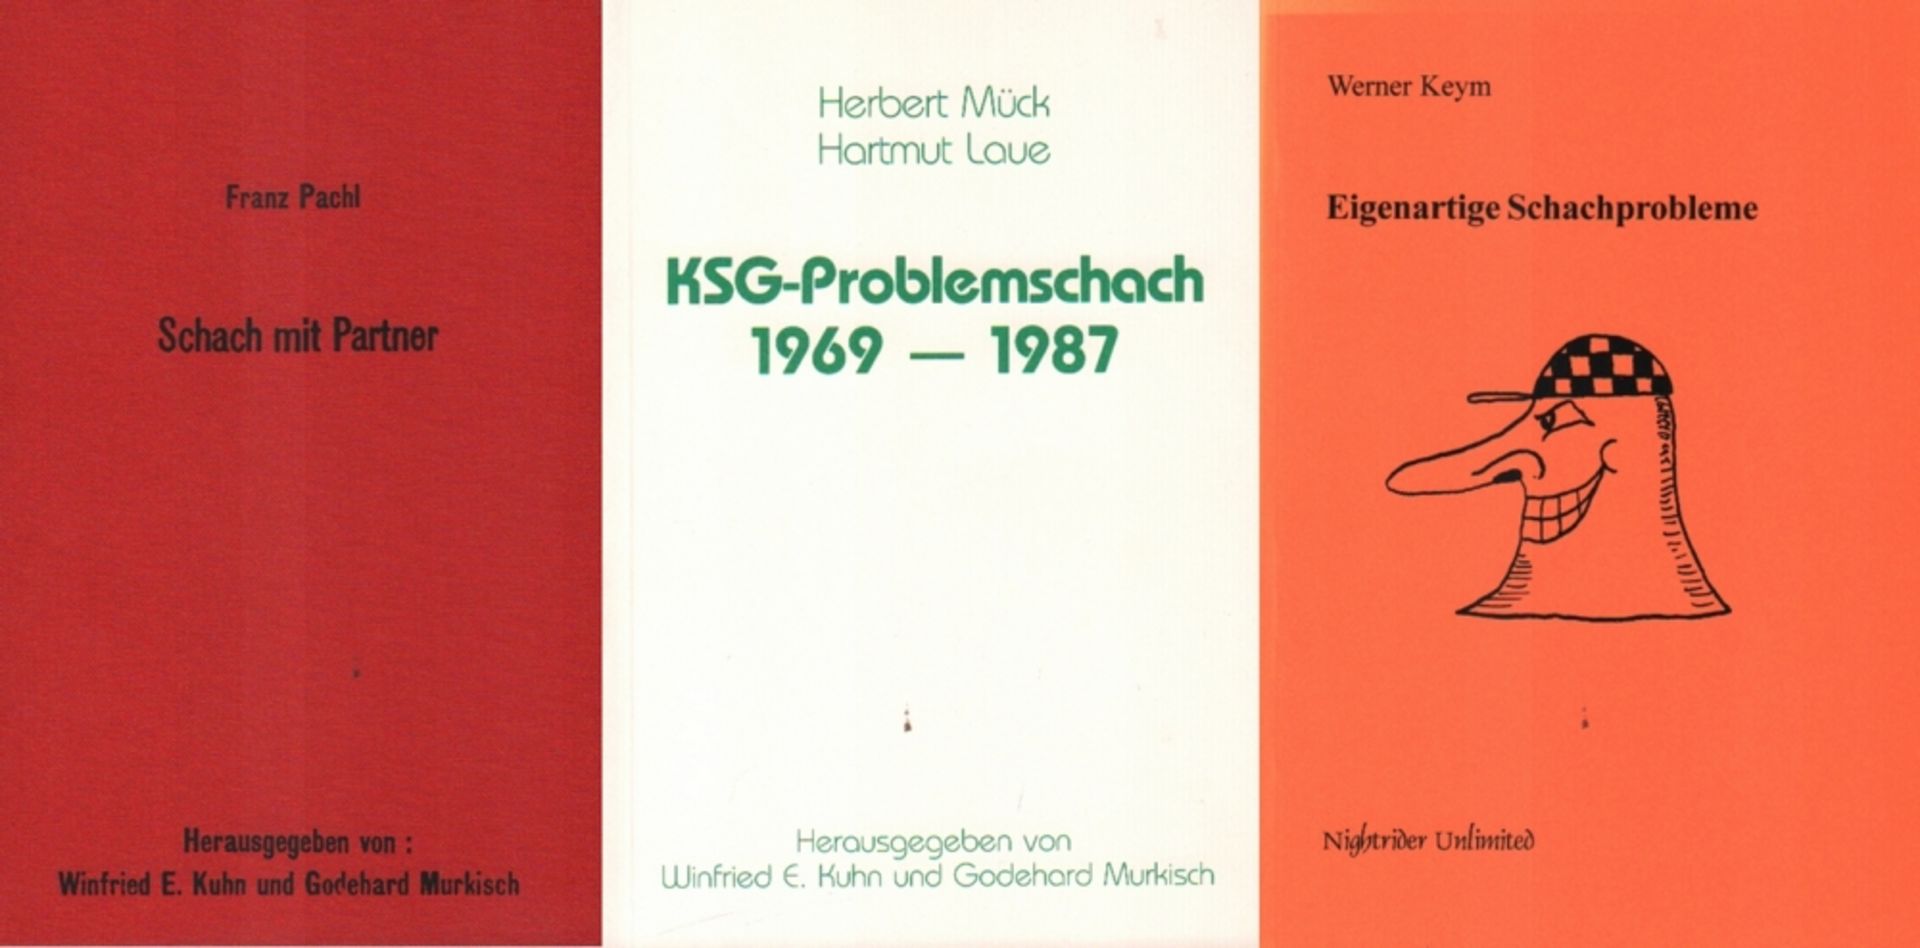 Pachl, Franz. Schach mit Partner. Göttingen und Lüneburg, Selbstverlag, 1999. 8°. Mit Textabb. und